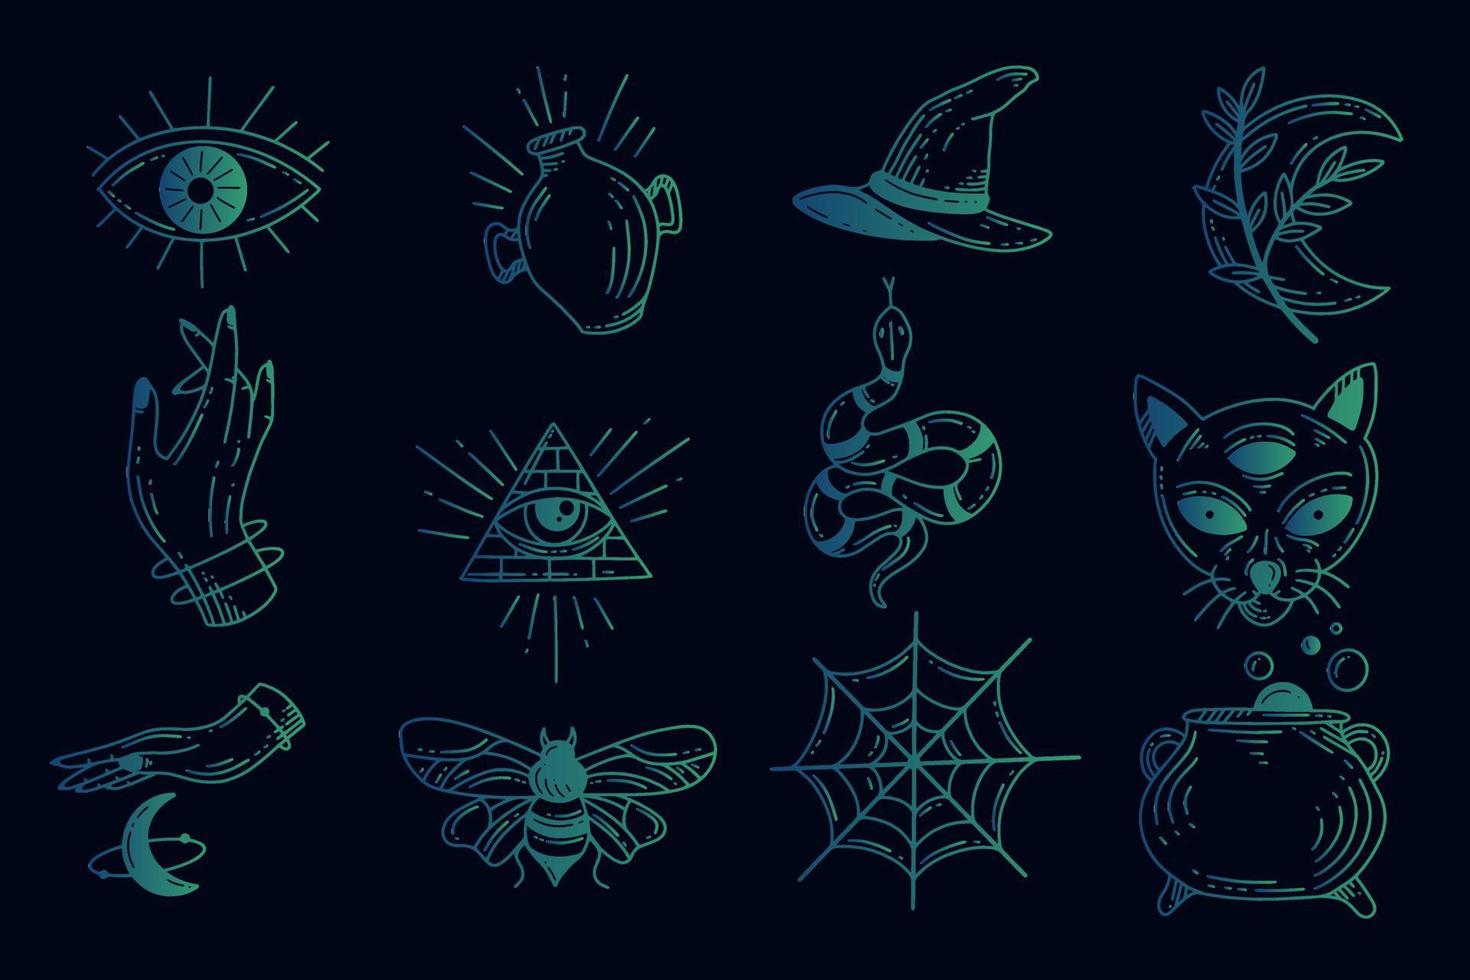 conjunto coleção místico celestial simples minimalismo tatuagem clipart símbolo espaço doodle elementos esotéricos ilustração vintage vetor